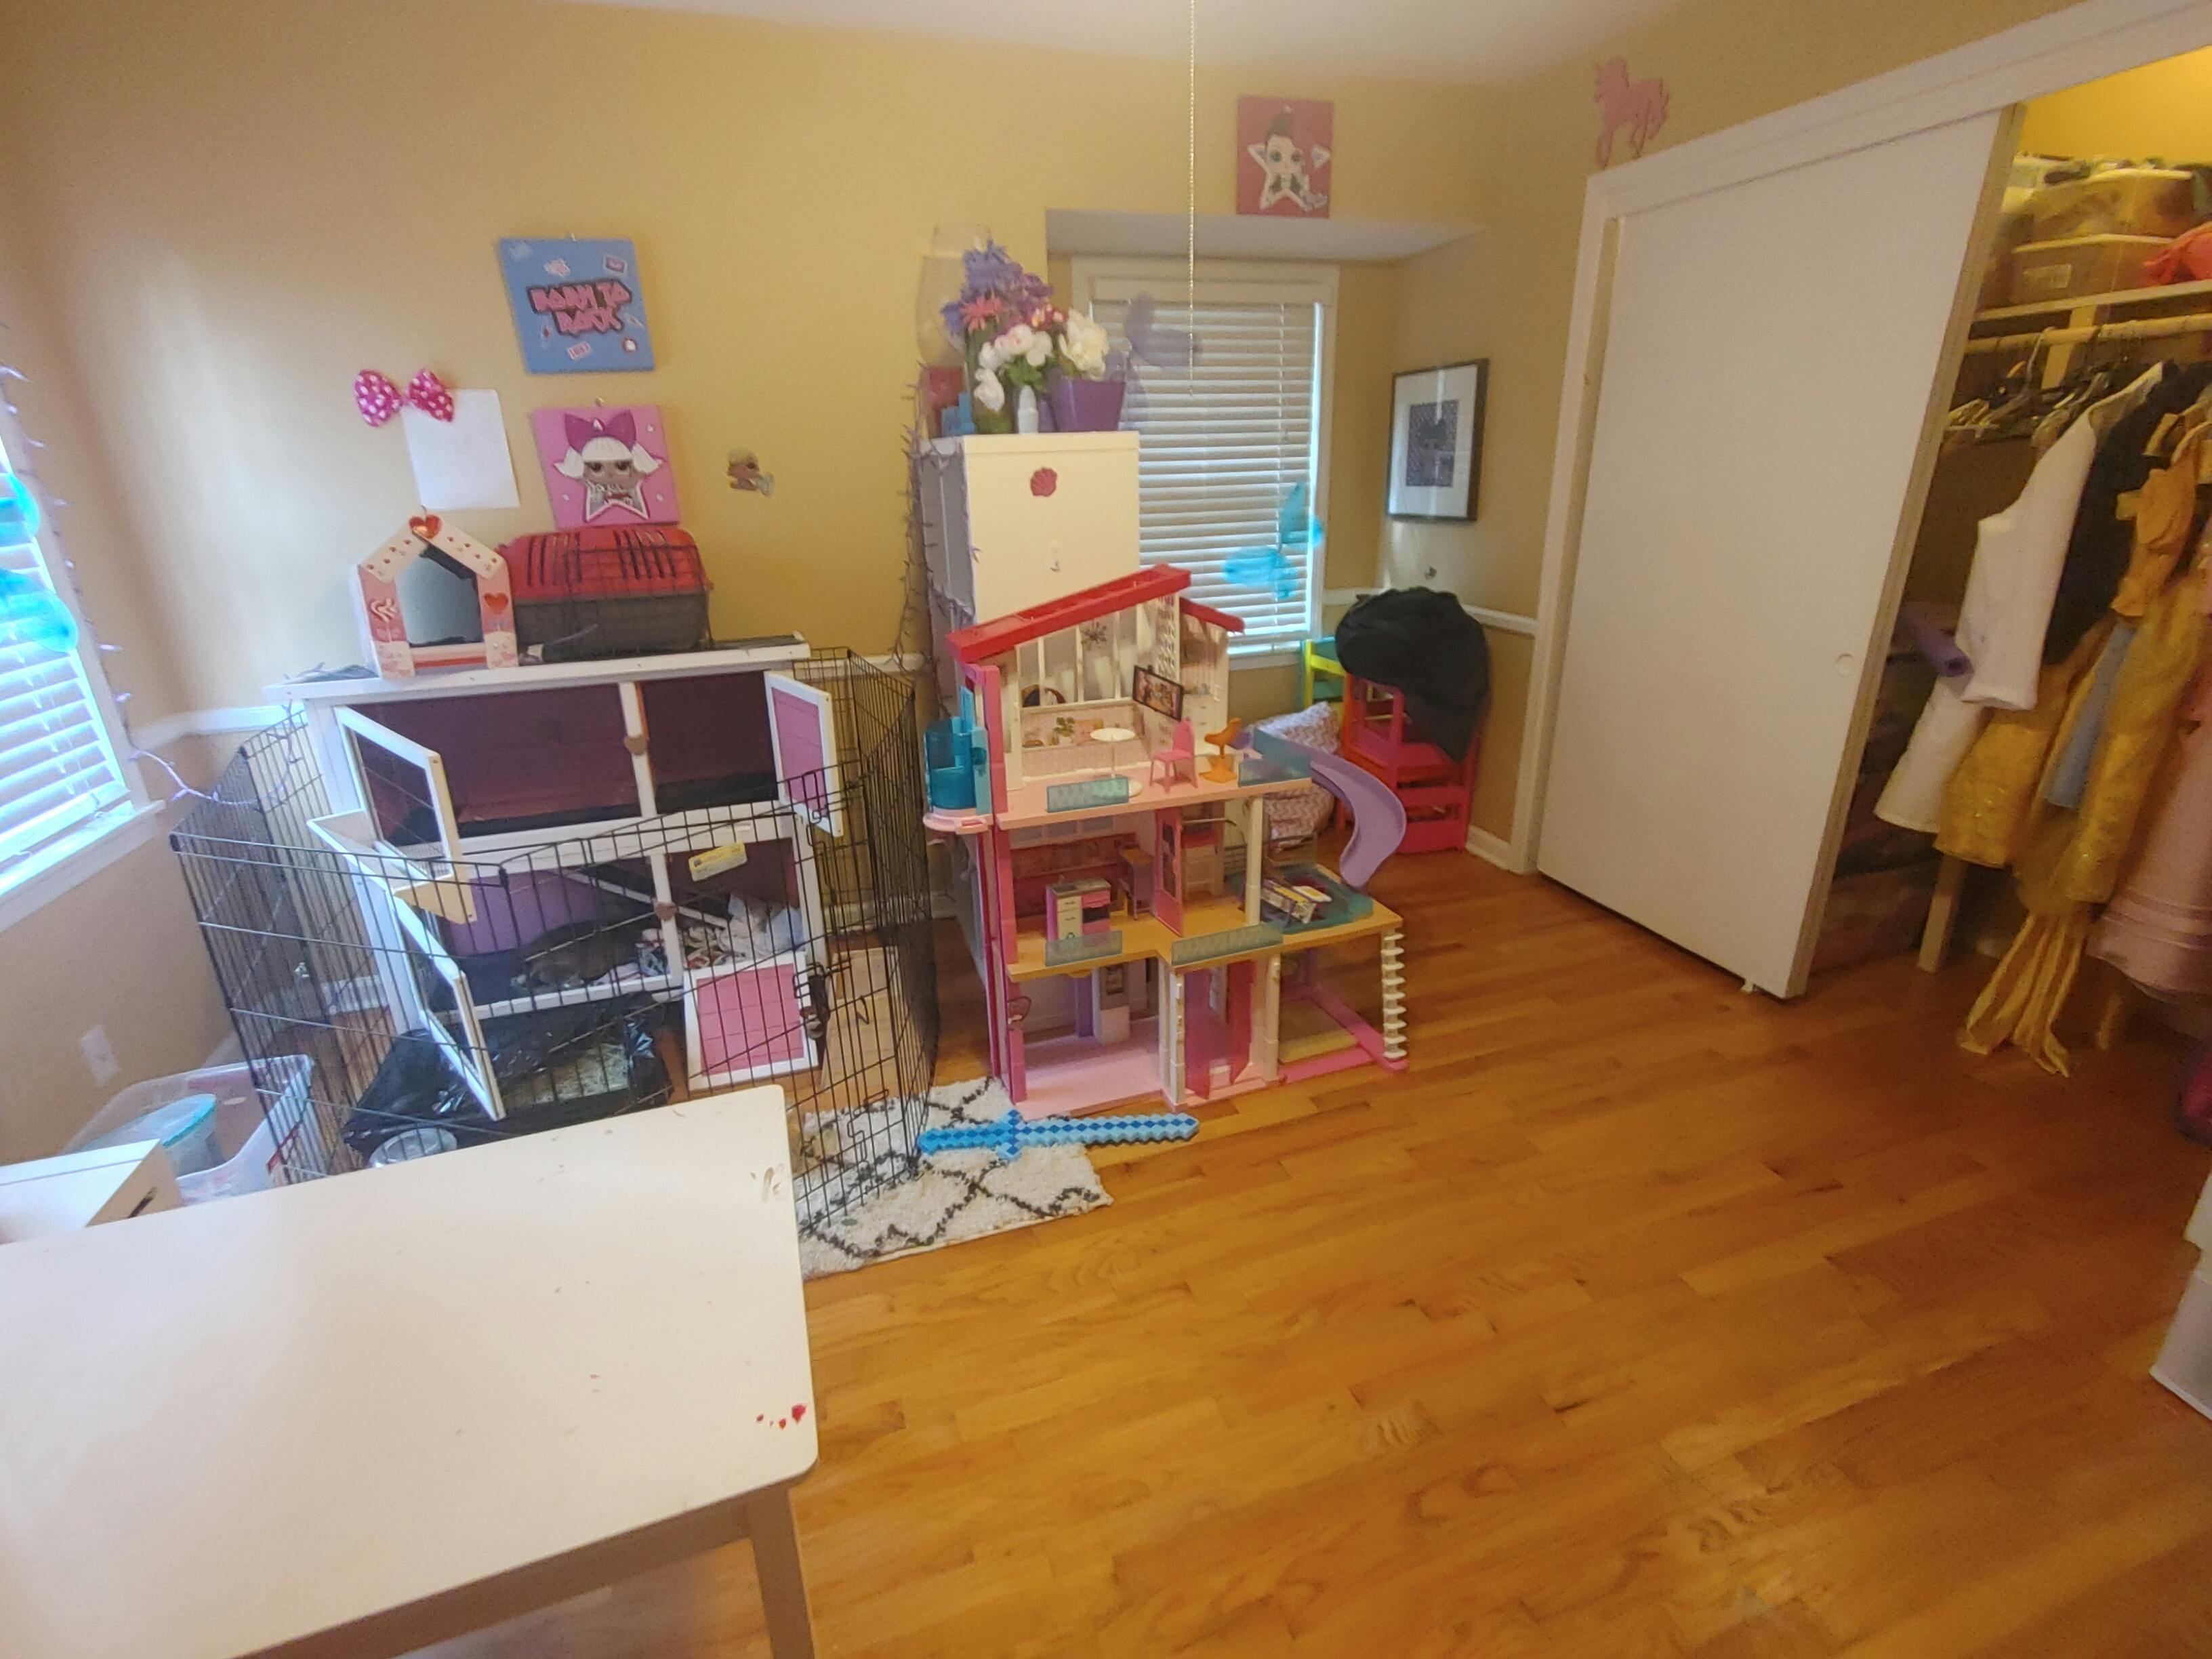 Playroom Organization & Decluttering 